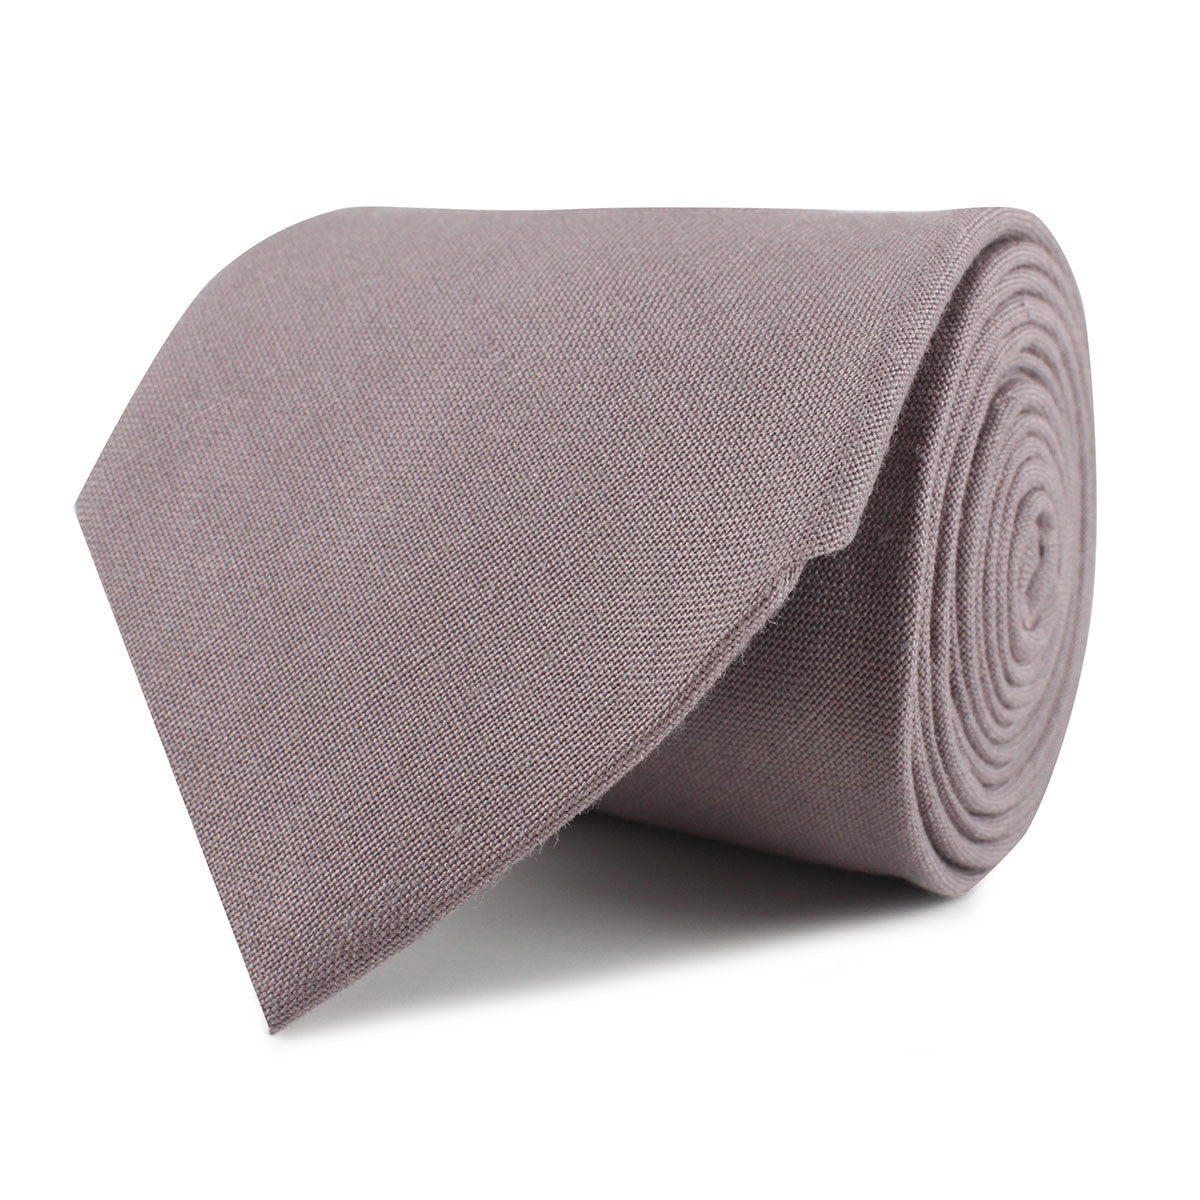 Grey Slub Linen Necktie | Men's Gray Tie | Business Casual Ties Online ...